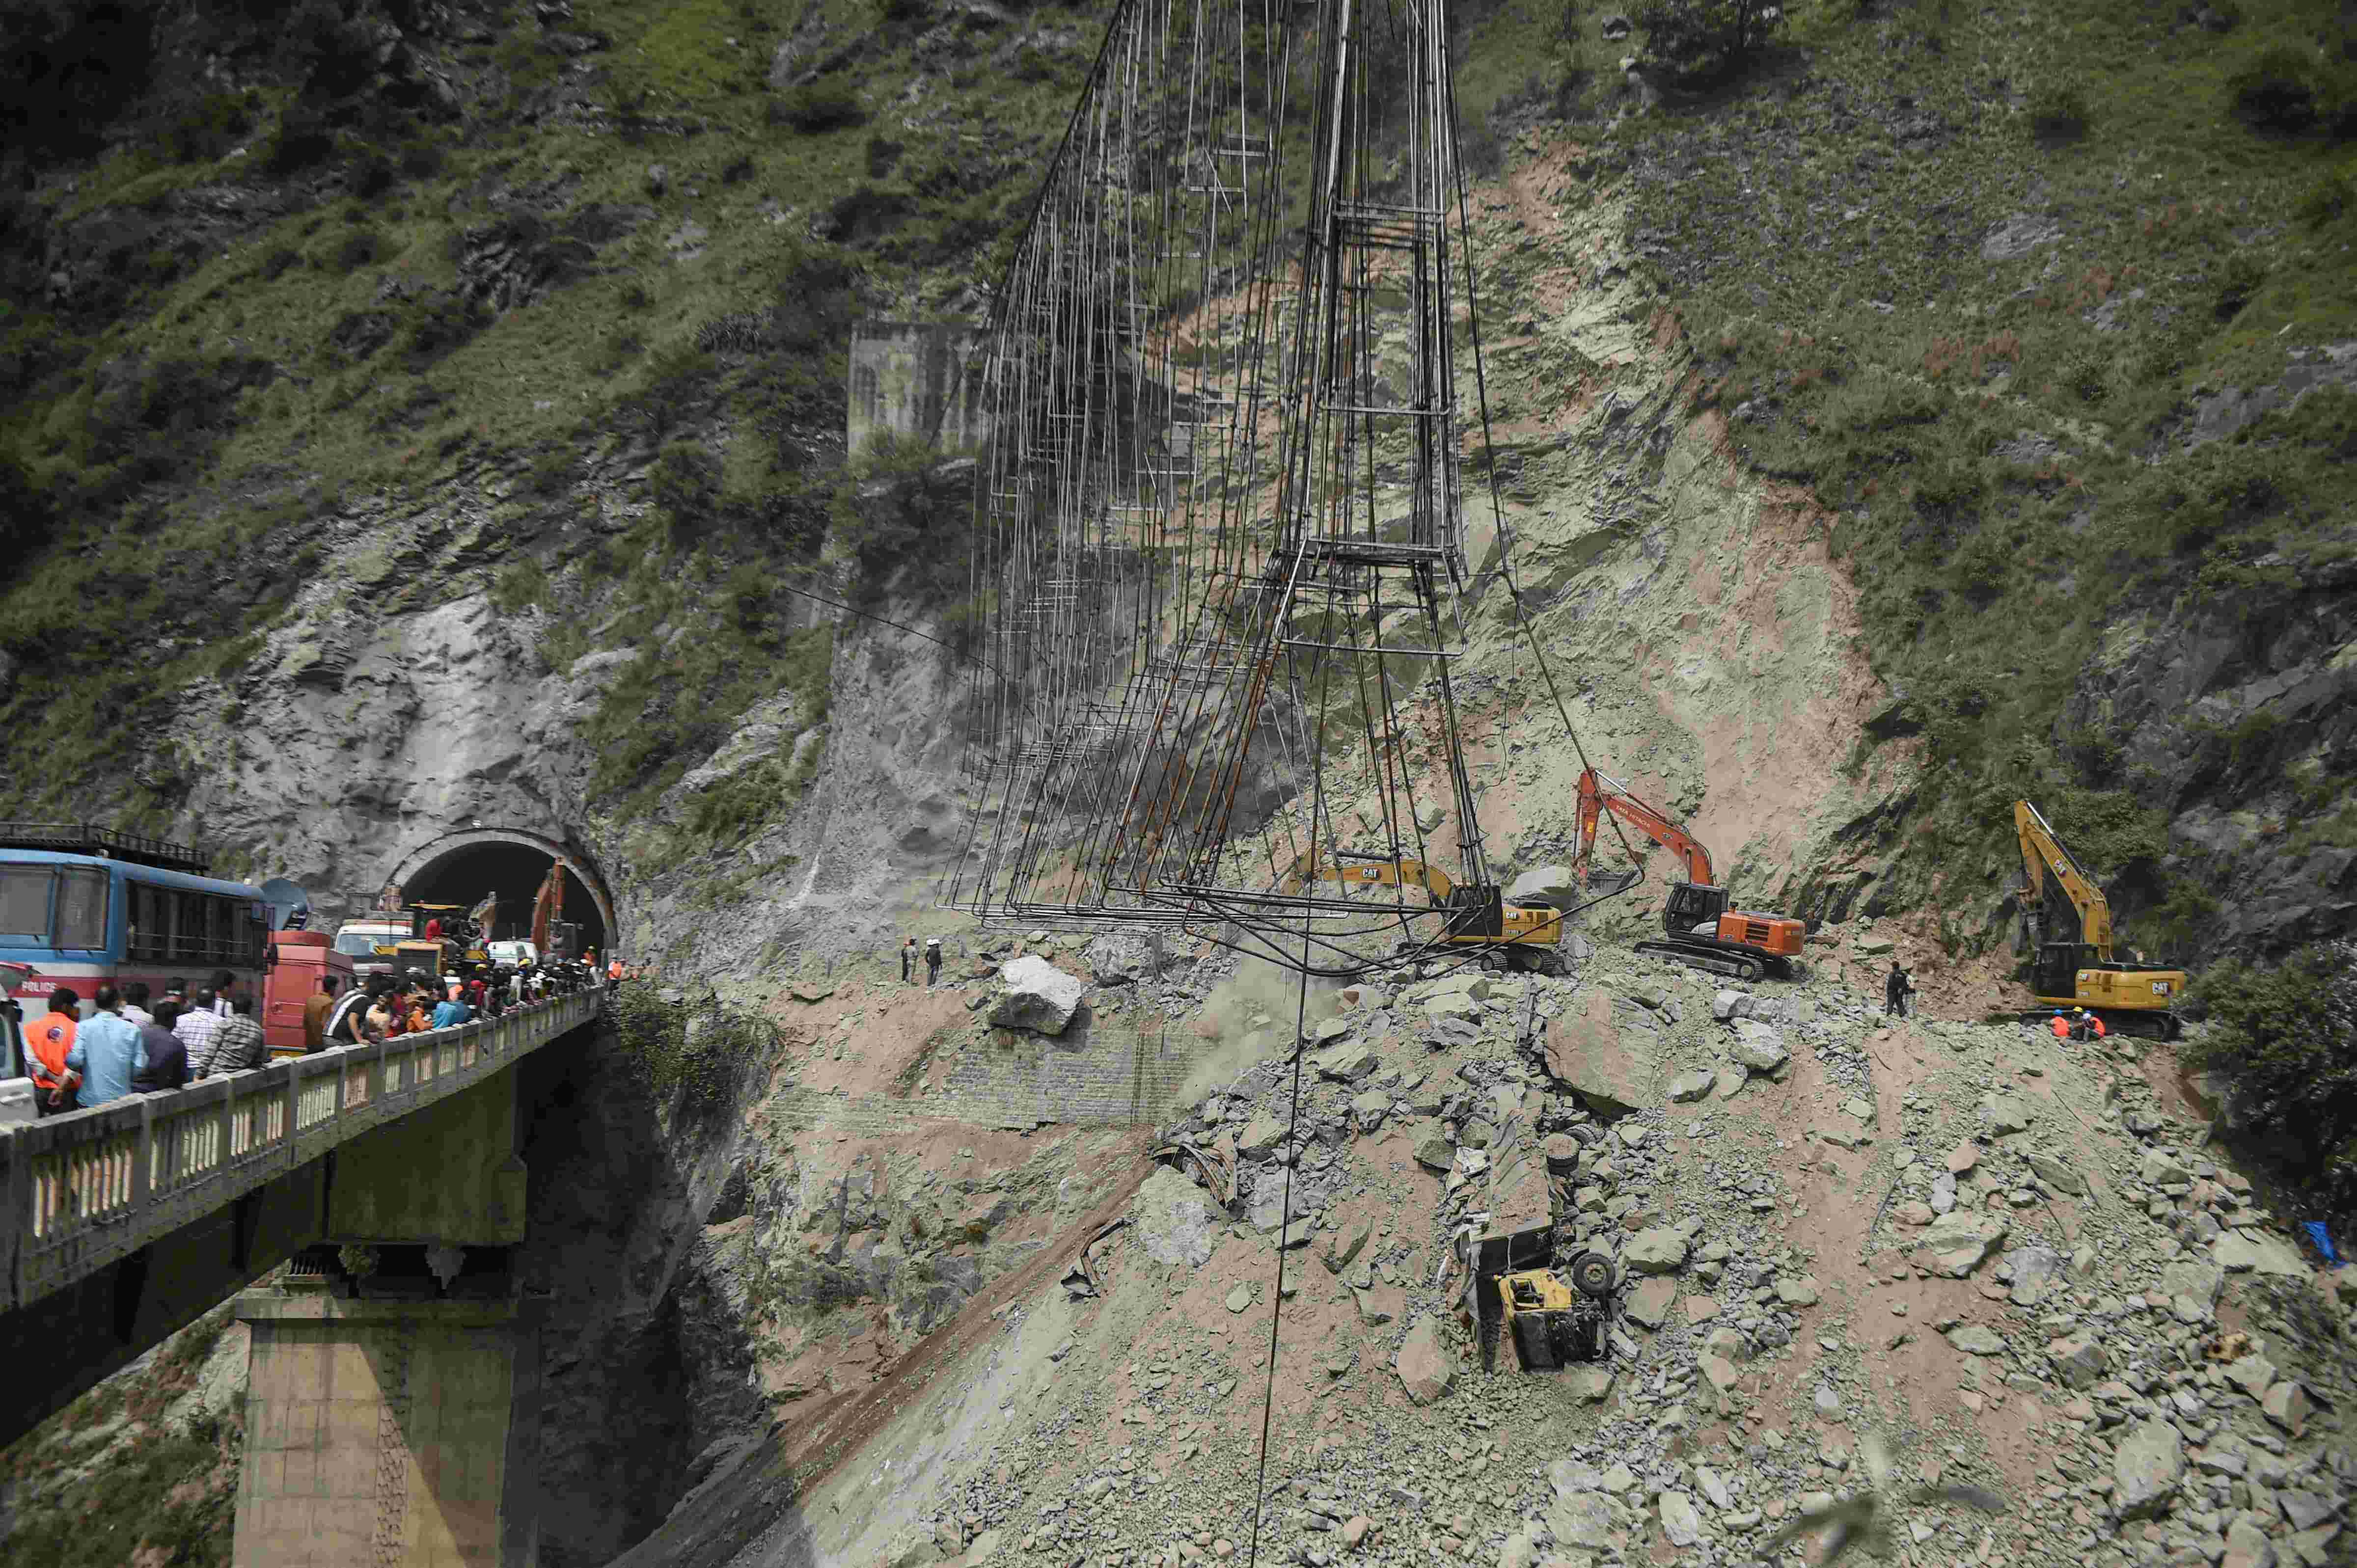 J-K landslide: Nine bodies recovered